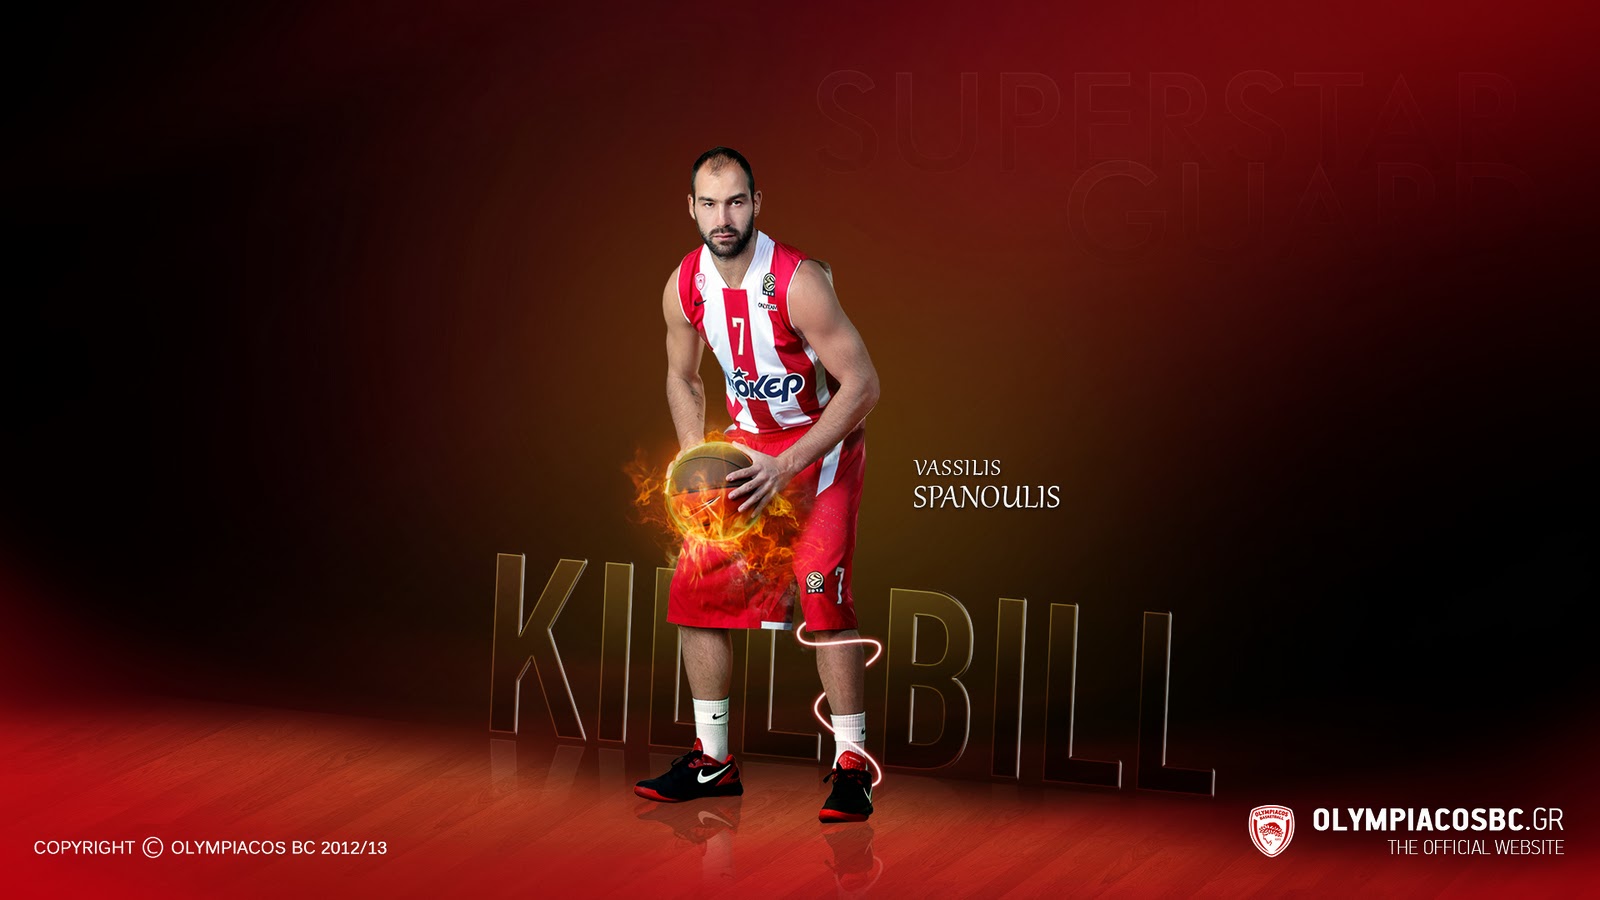 Vassilis Spanoulis Kill Bill 2014 Olympiacos Greece HD Desktop Wallpaper